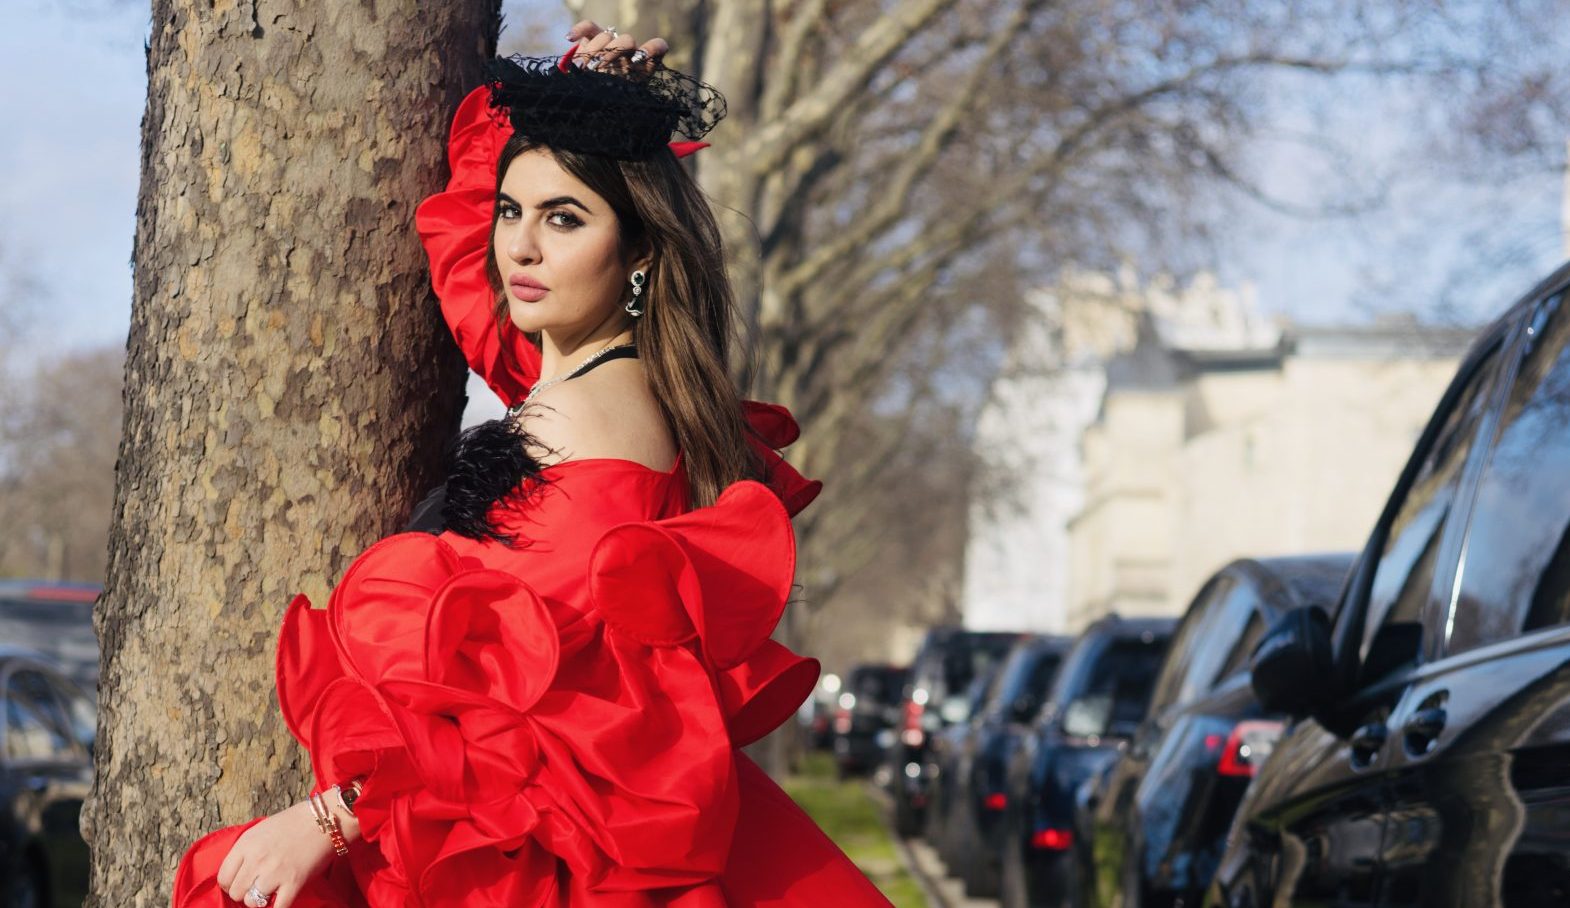 Deepti Sadhwani is set to make her debut at the Paris Fashion Week!